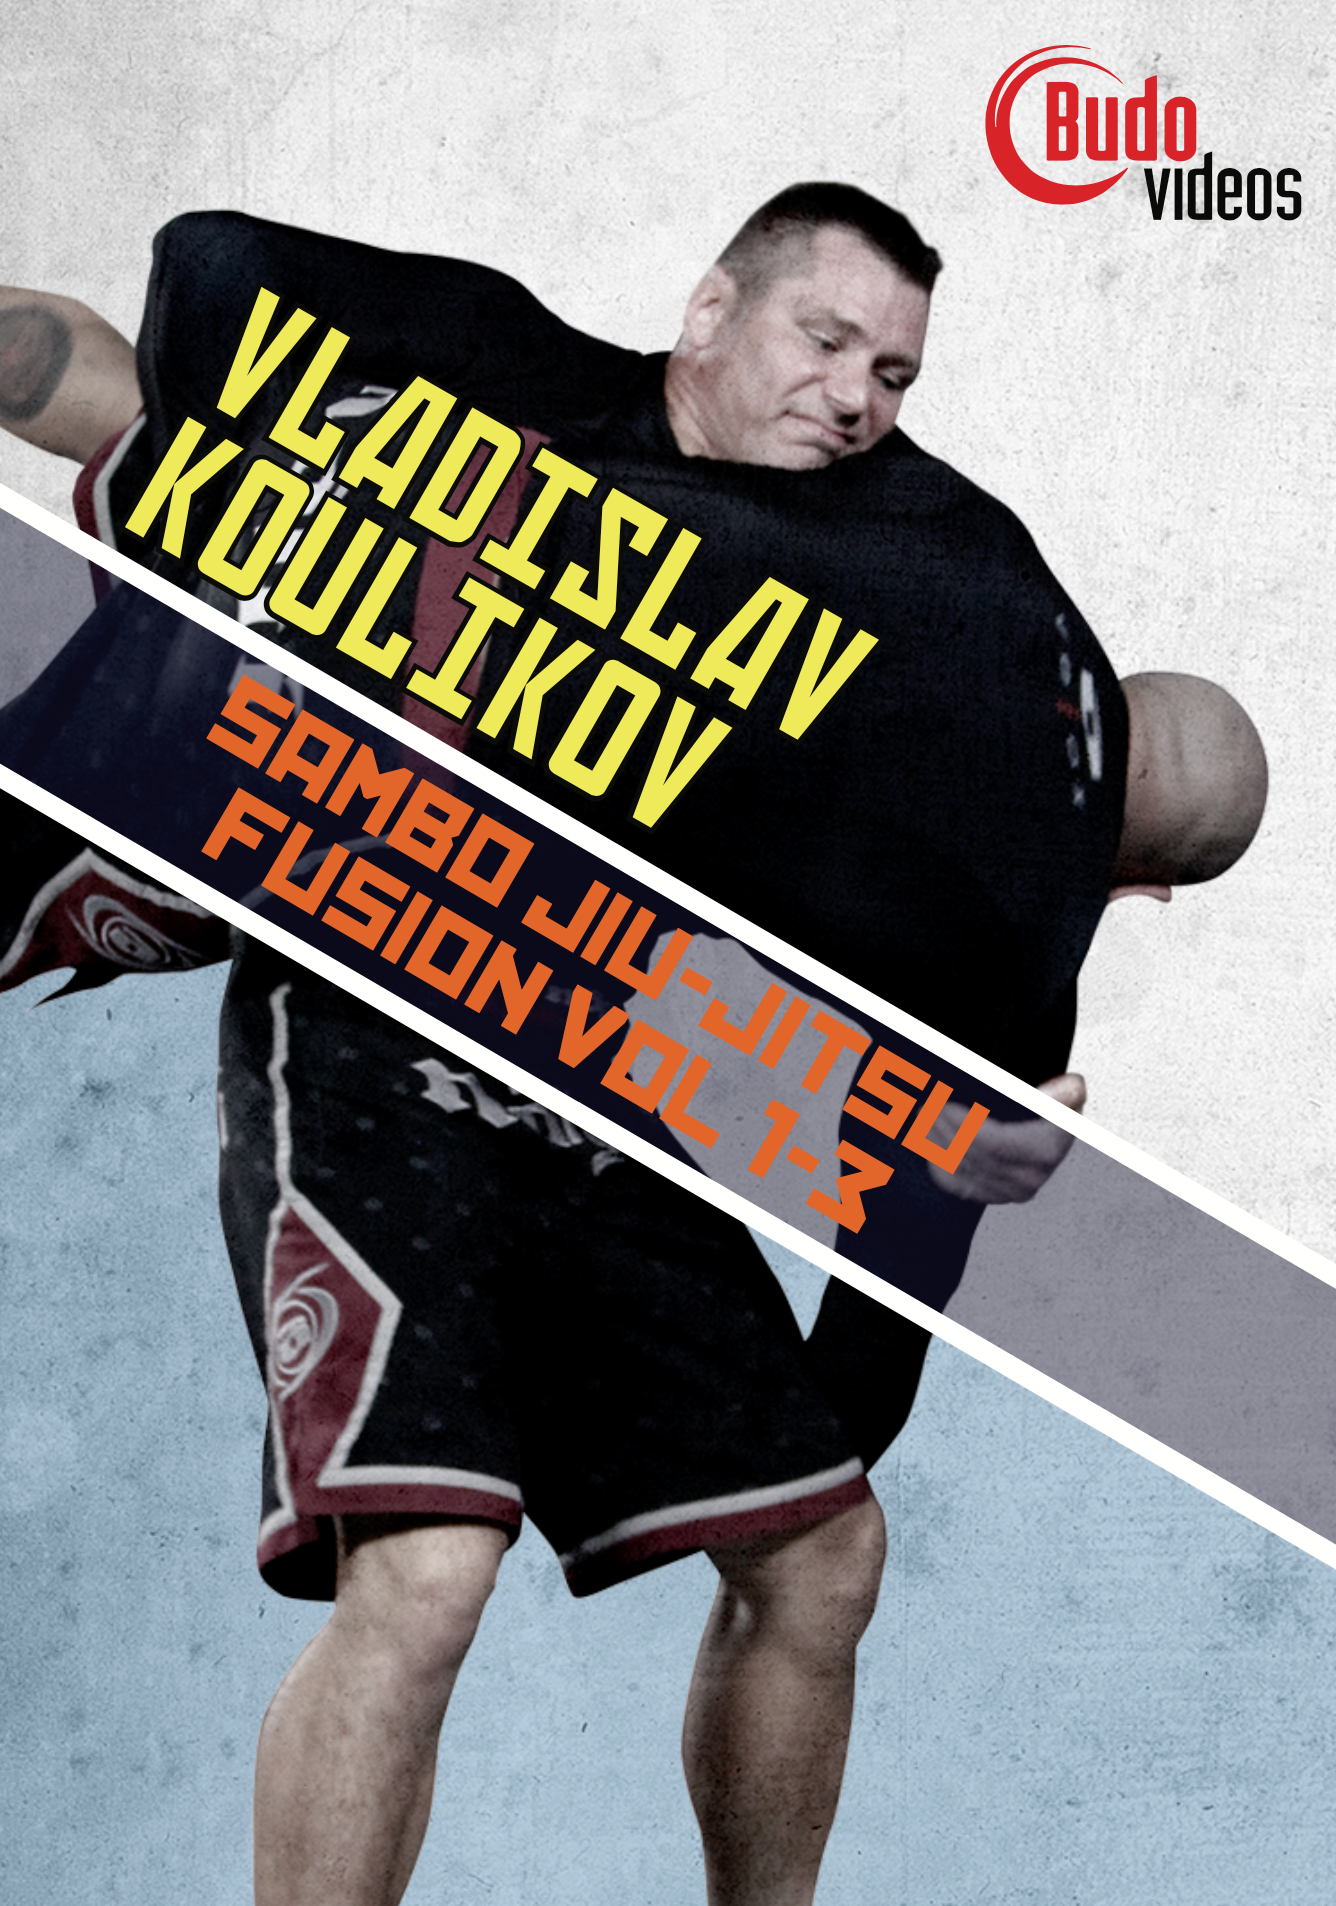 Serie Sambo Jiu-jitsu Fusion de Vladislav Koulikov (bajo demanda)